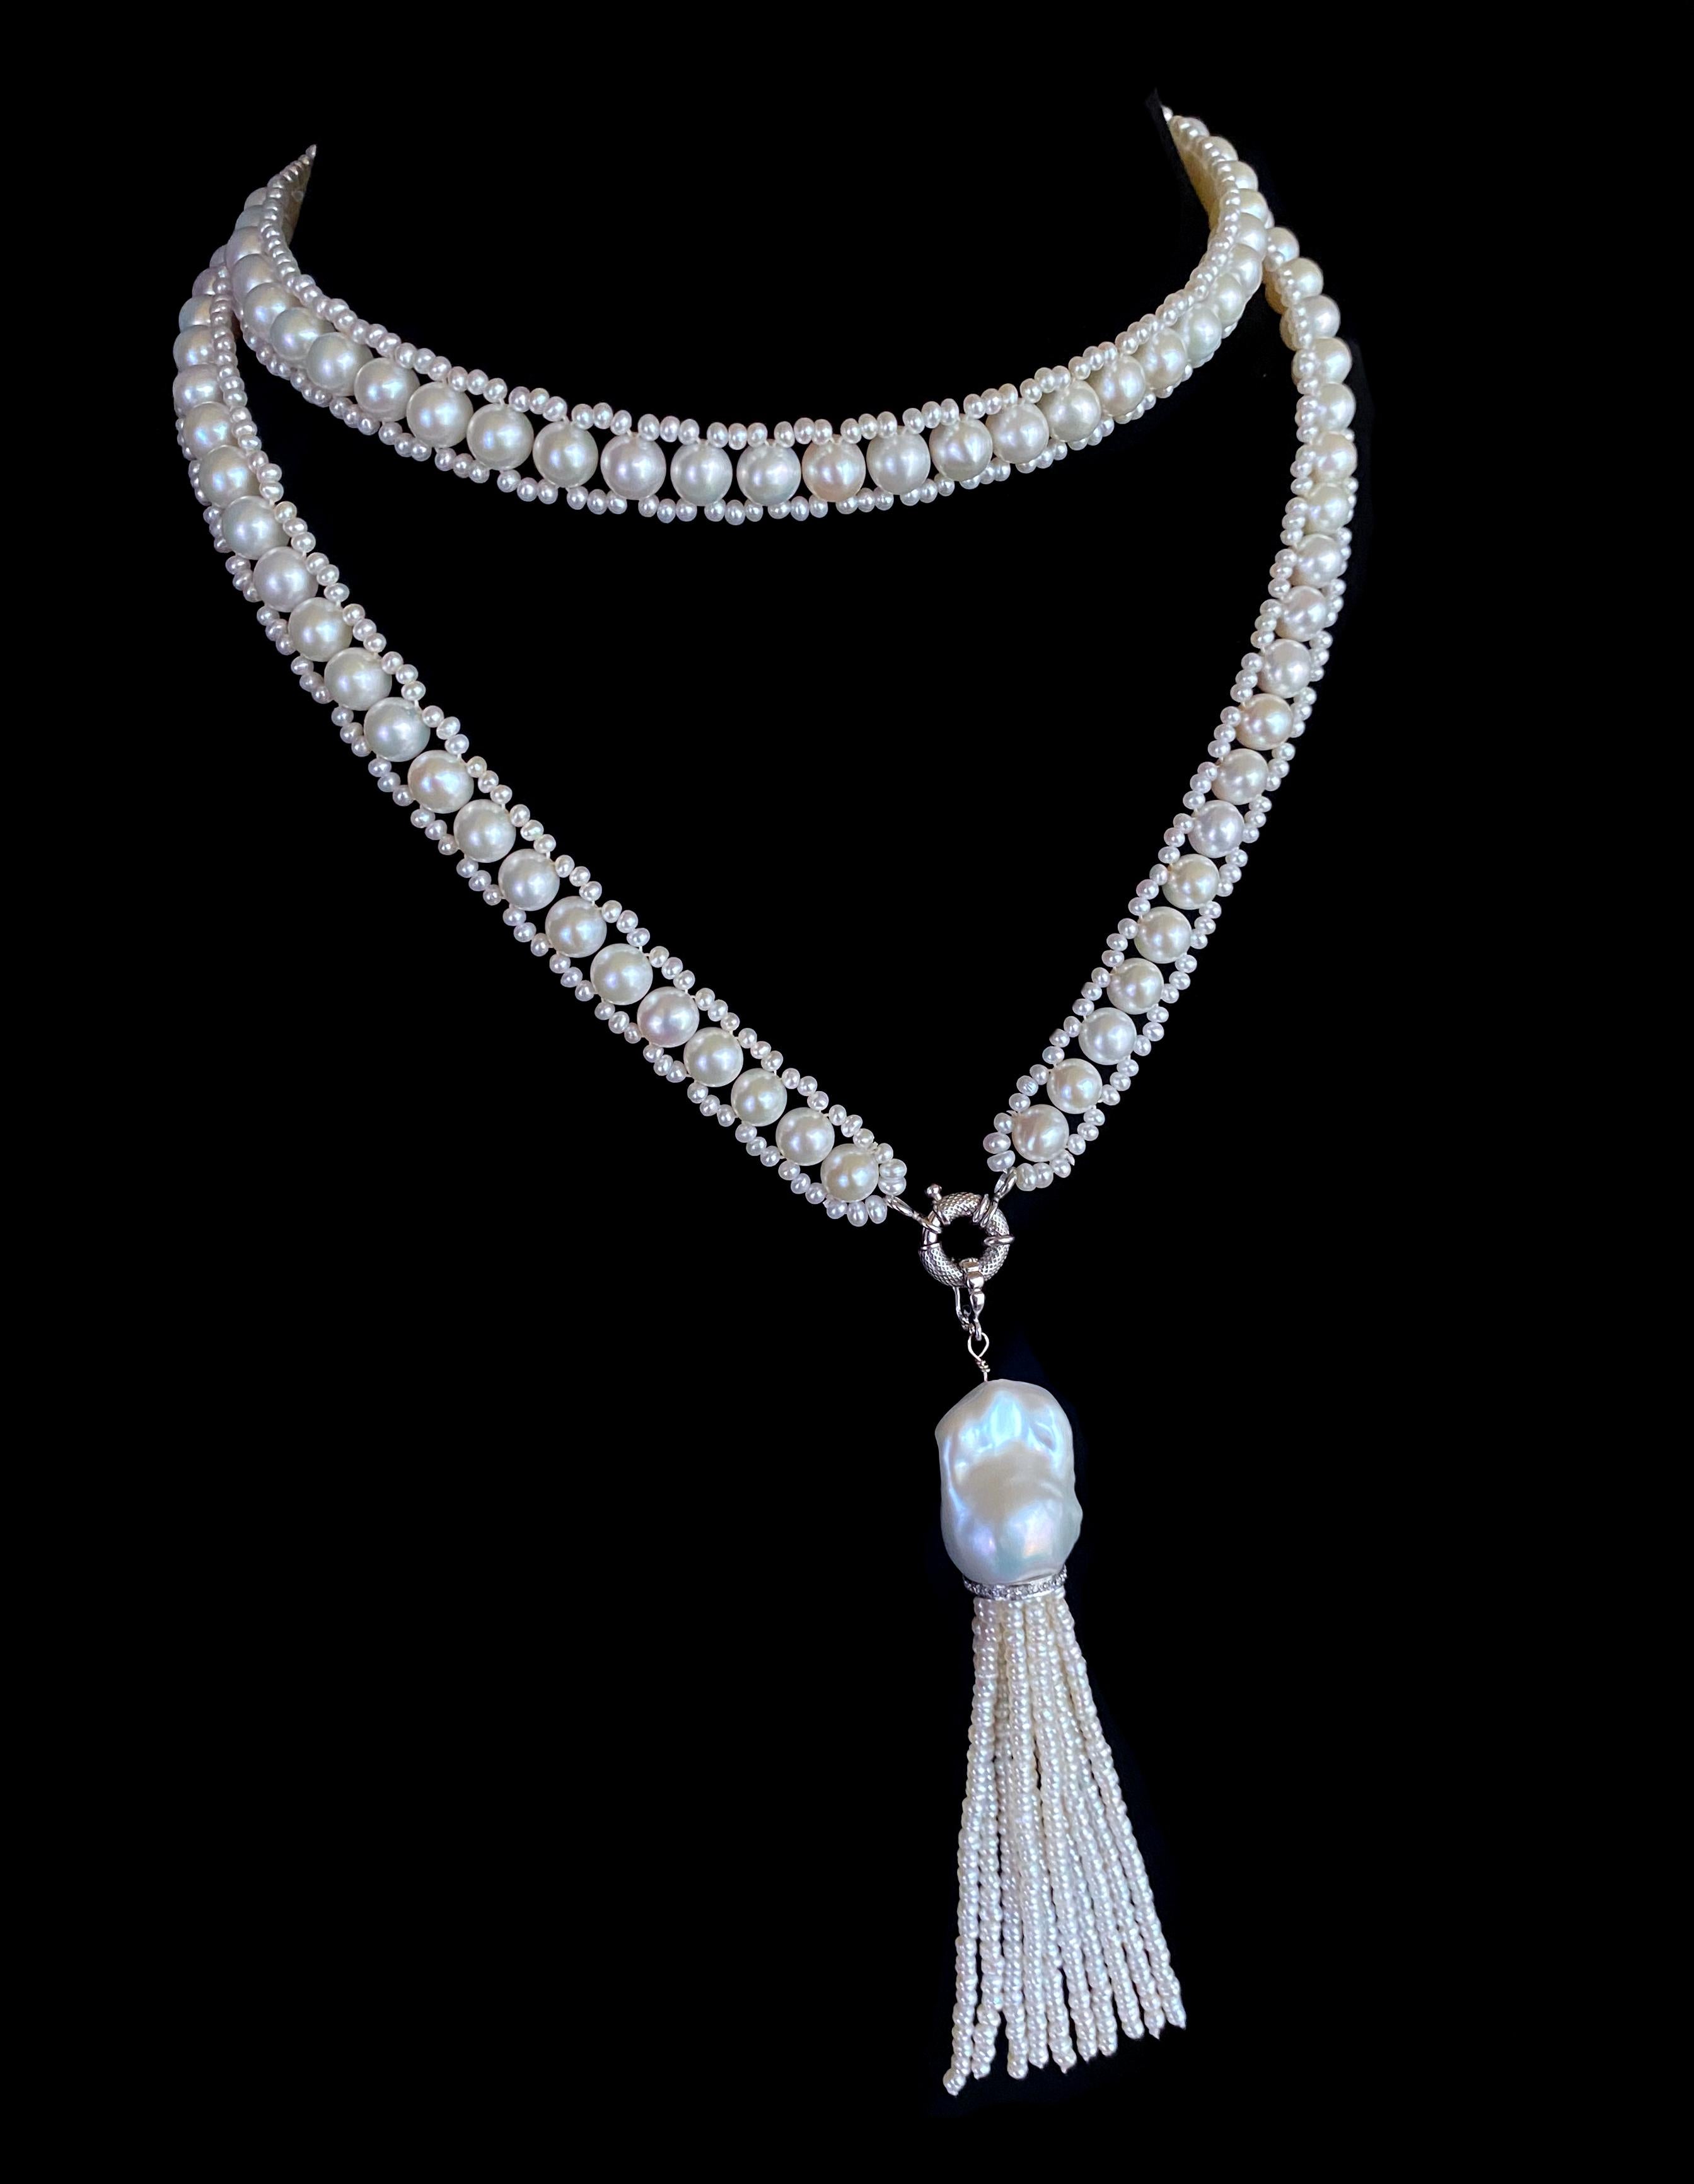 Klassisches Stück von Marina J. Dieses Soutoir besteht aus mehreren großen Perlen, die zu einem säulenartigen Design verwoben sind. Die weißen Perlen haben einen schönen Glanz, der perfekt zu der dramatischen, abnehmbaren Quaste passt. Mit einer